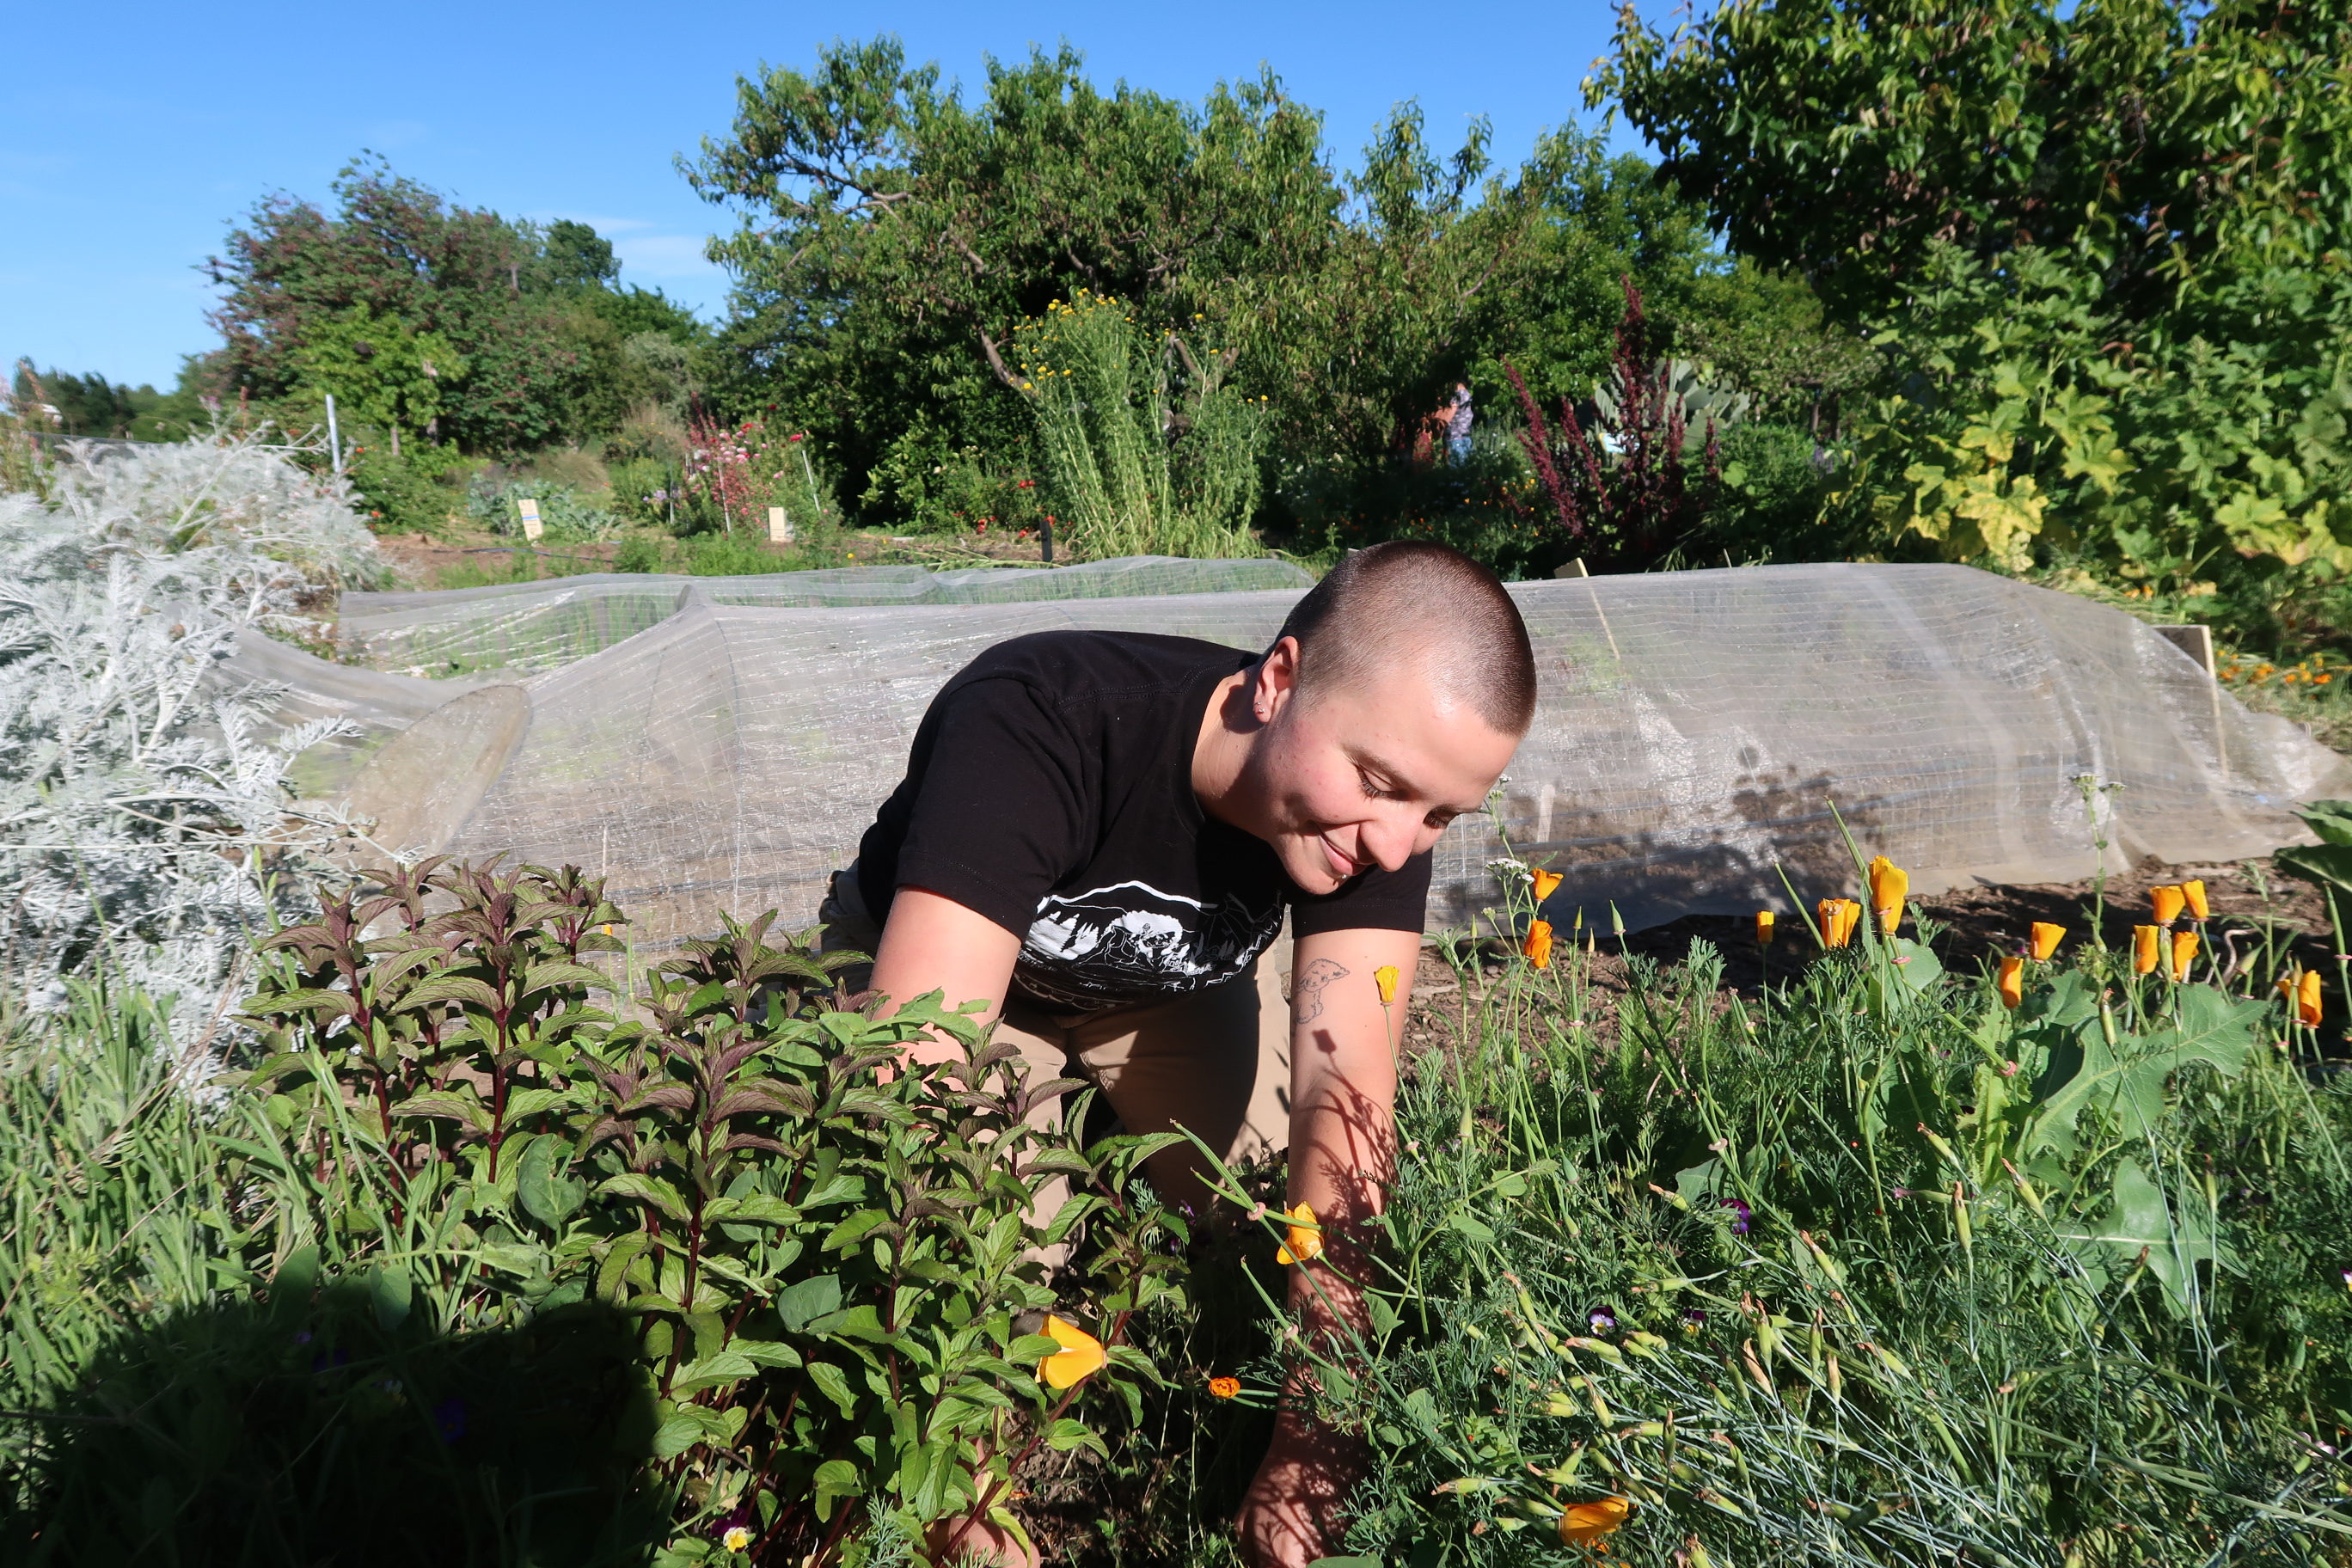 Ebb Burk working in the Queer Flower Garden